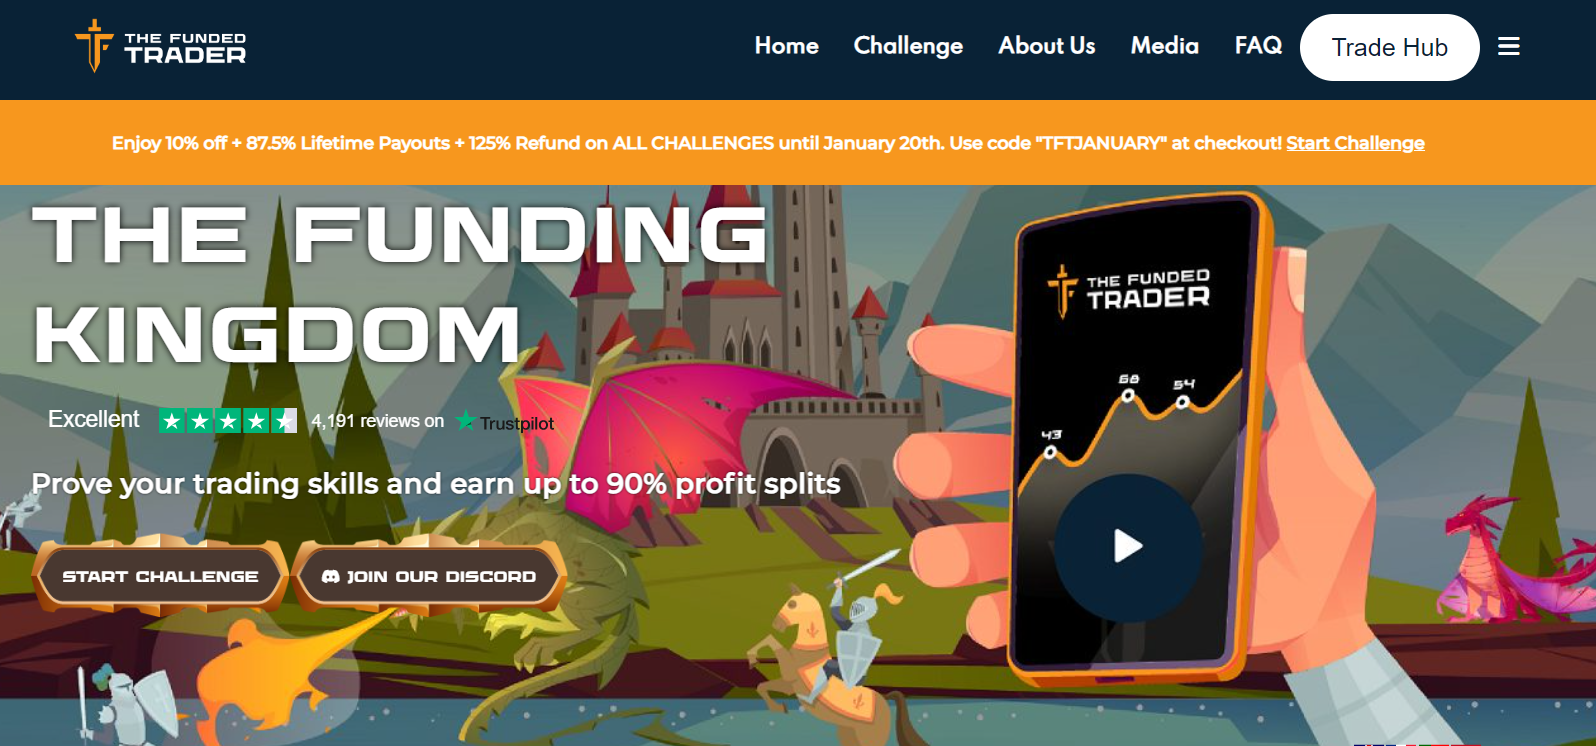 รีวิว The Funded Trader - Start Challenge